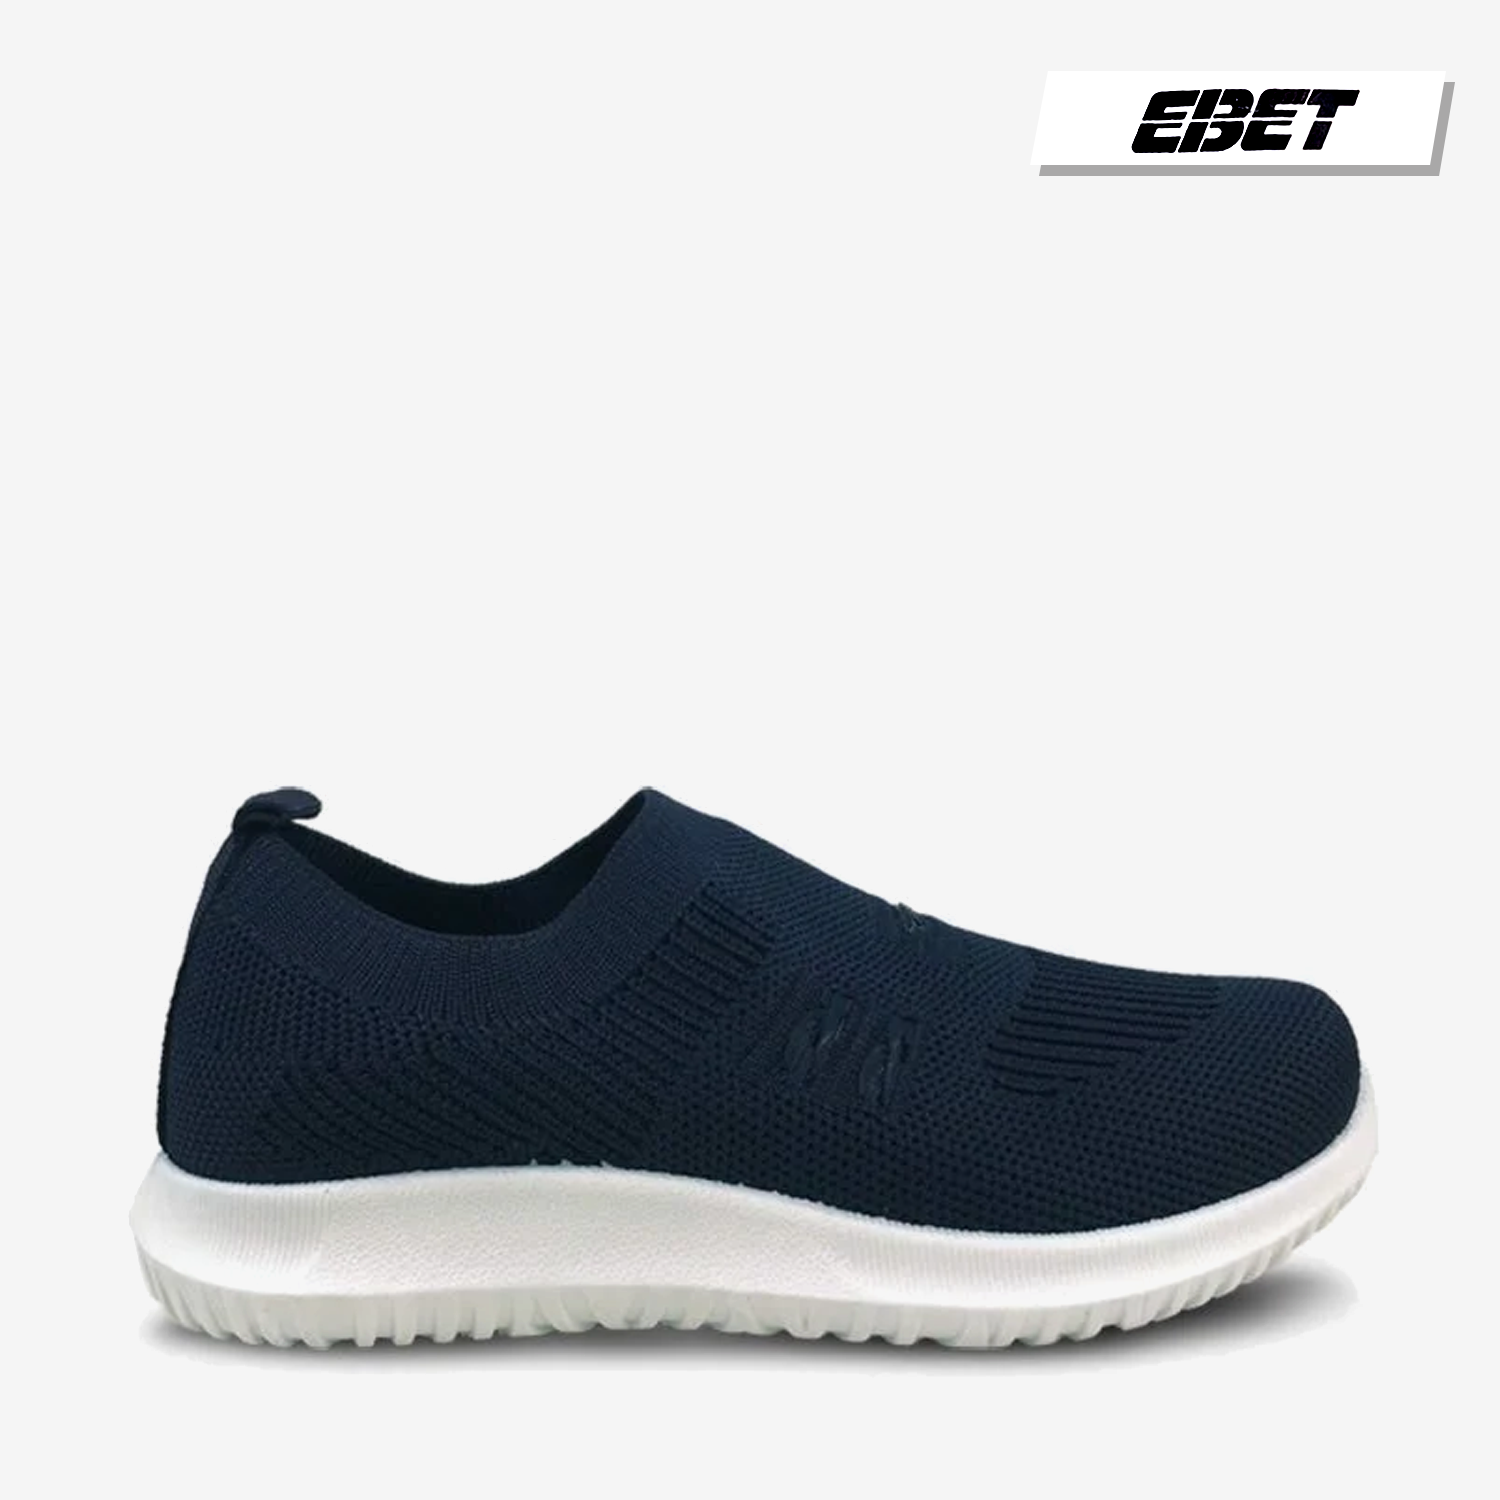  Giày thể thao Ebet 6511 